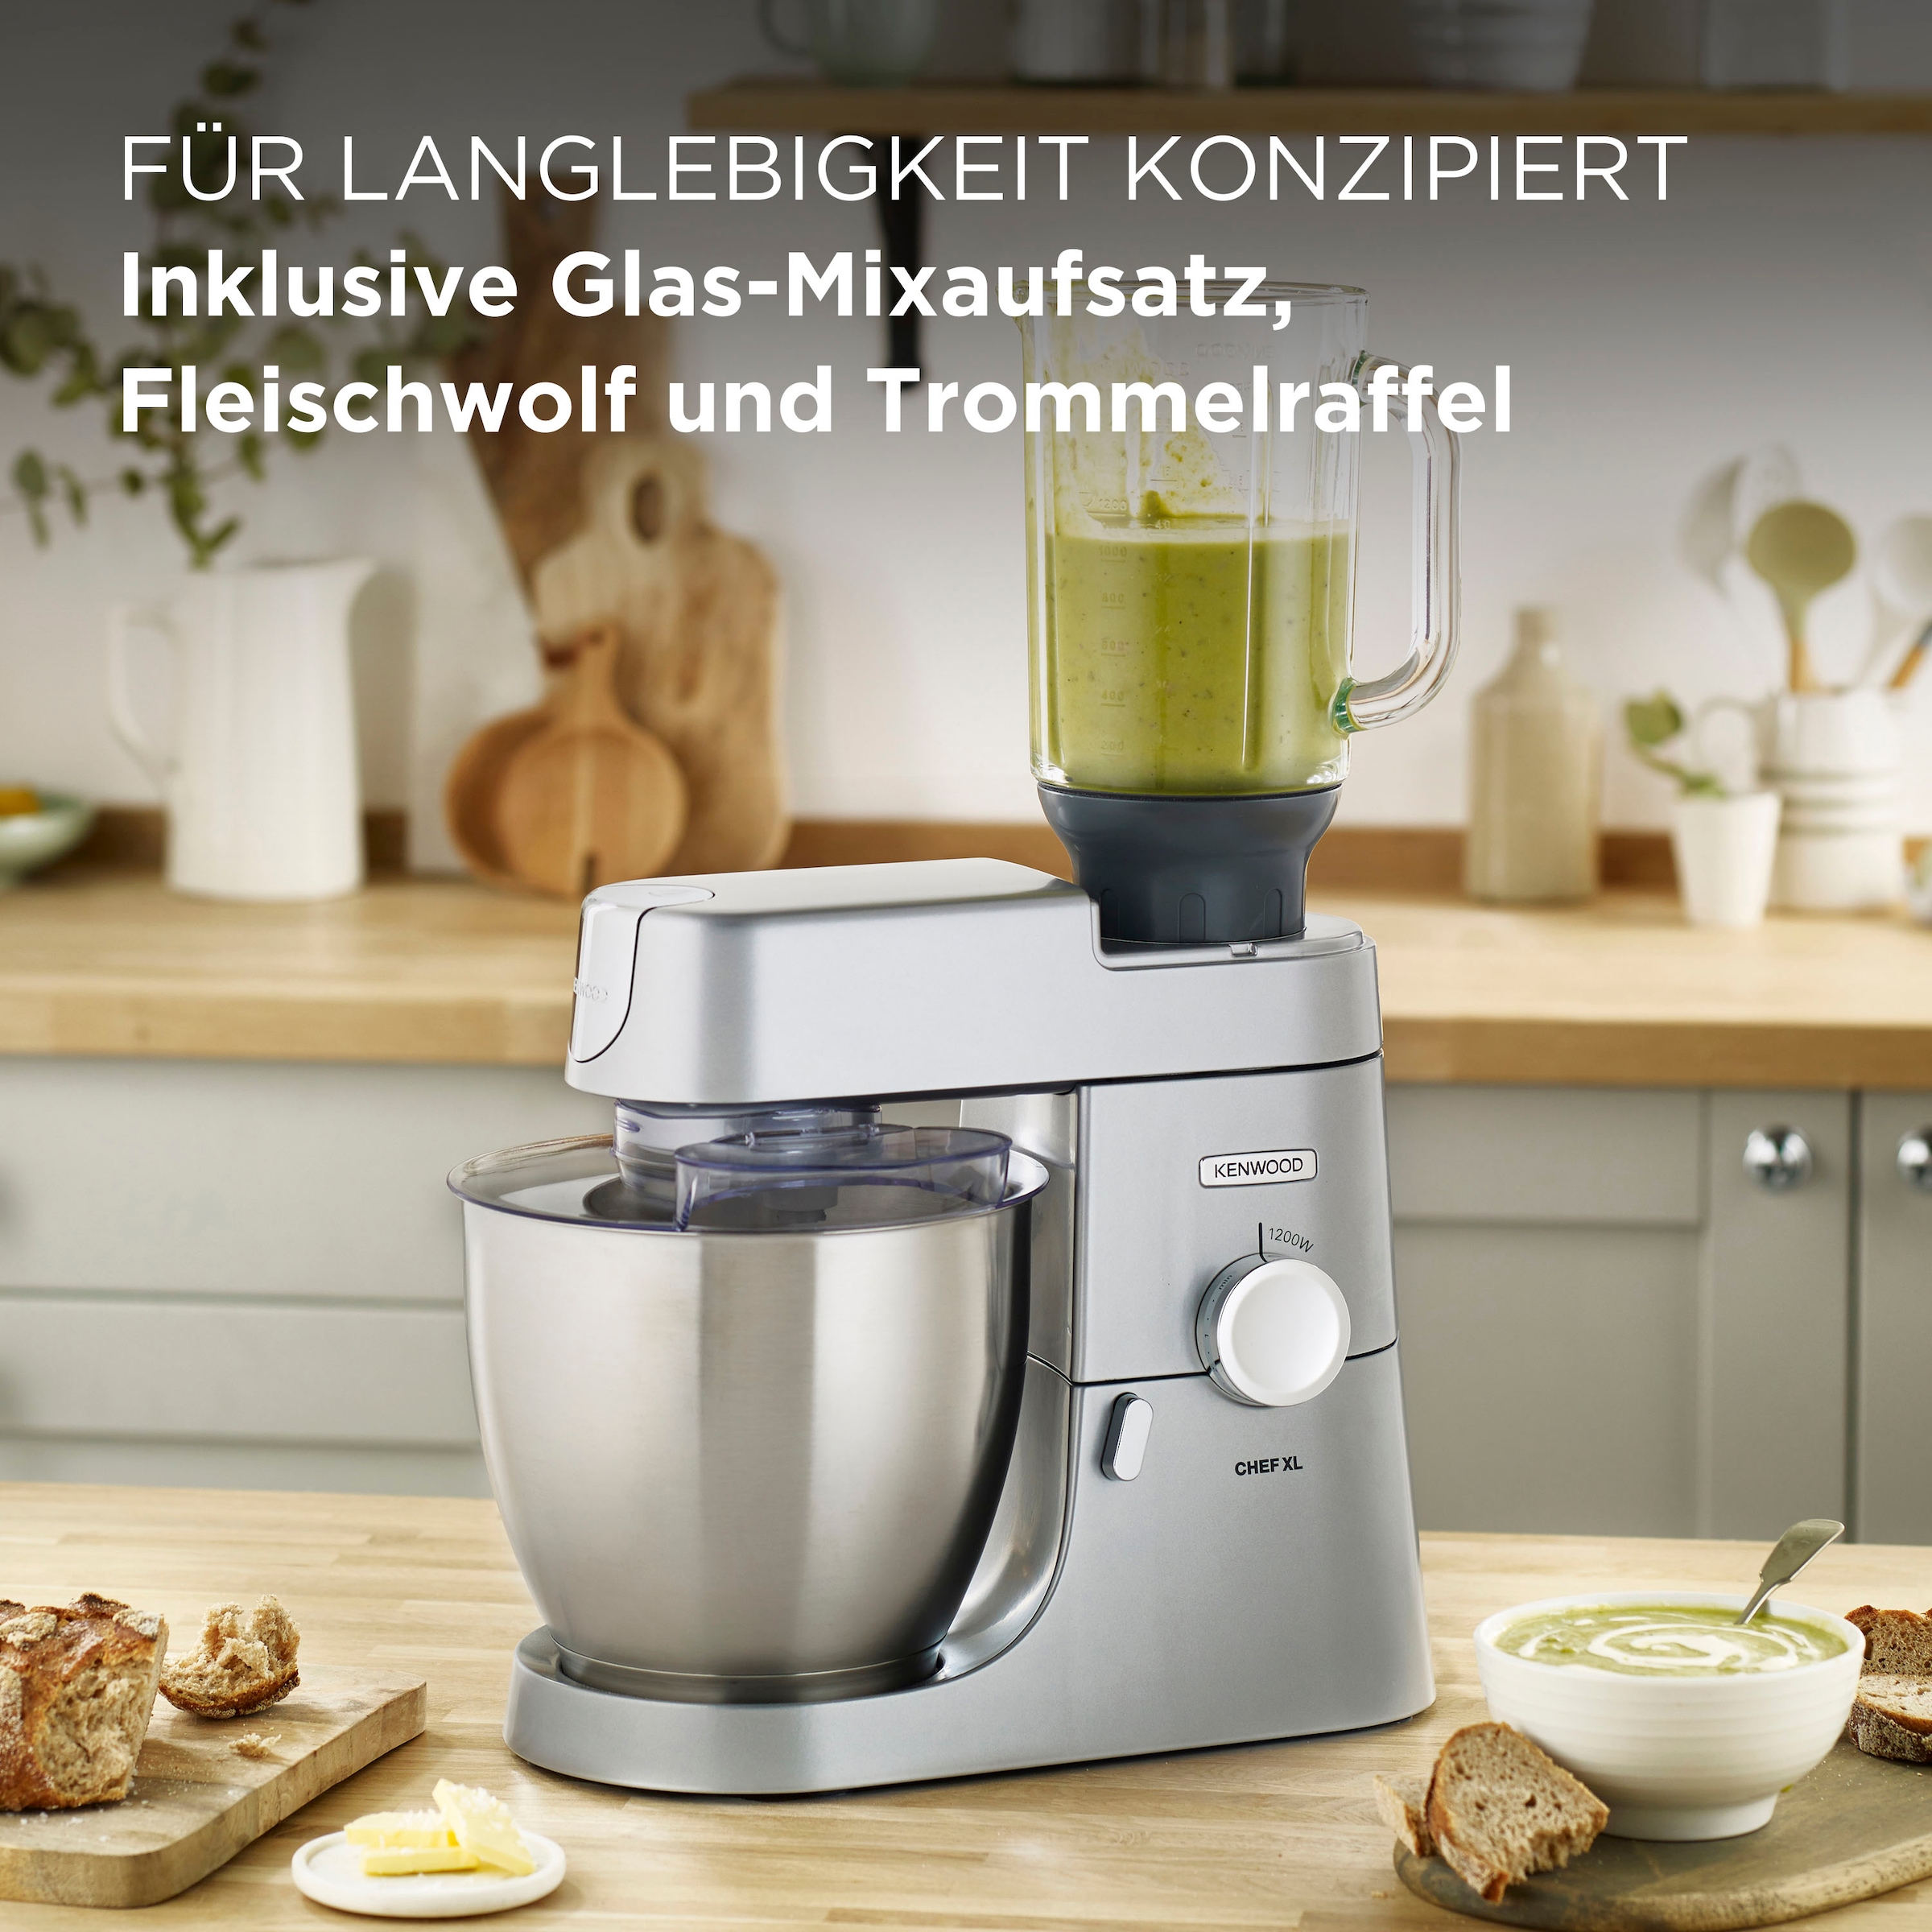 KENWOOD Küchenmaschine »Chef XL KVL4220S«, Trommelraffel Mixaufsatz, BAUR | 6,7 und l Fleischwolf inkl. Schüssel